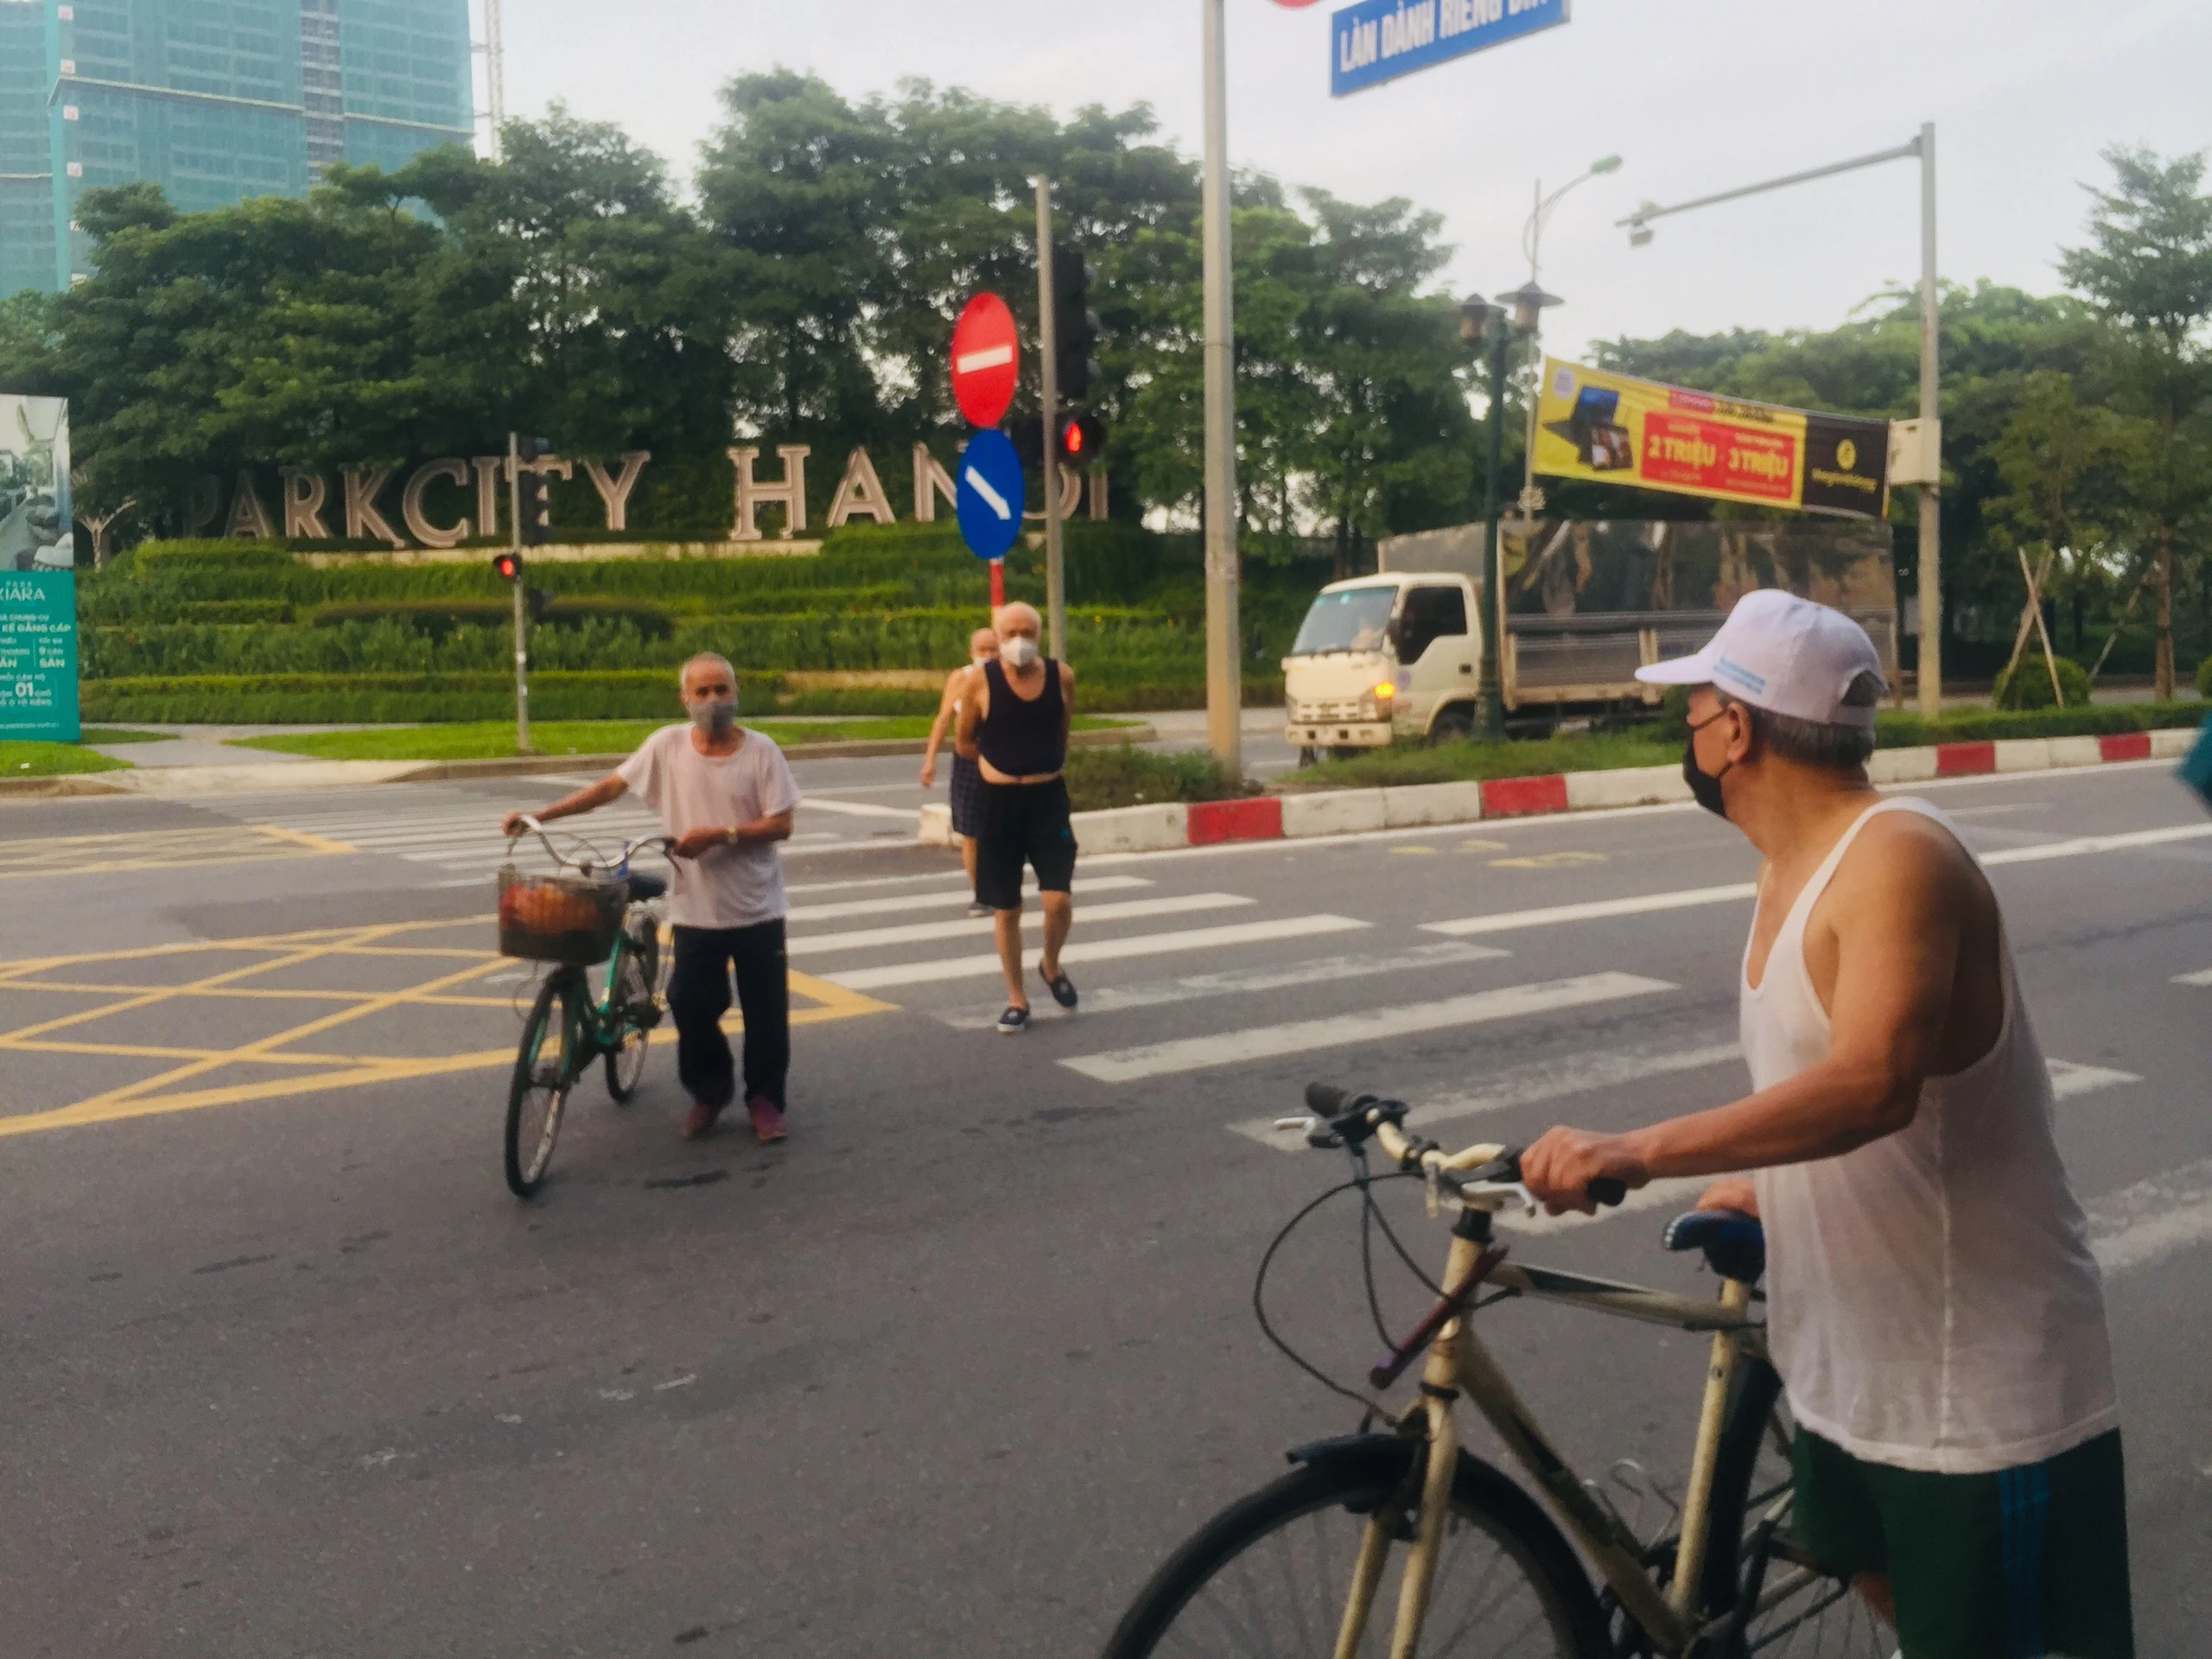 Trong sáng 28/6, tại khu vực Parkcity Hà Nội cơ bản người dân đều có ý thức chấp hành việc đeo khẩu trang và giãn cách khi tập thể dục.